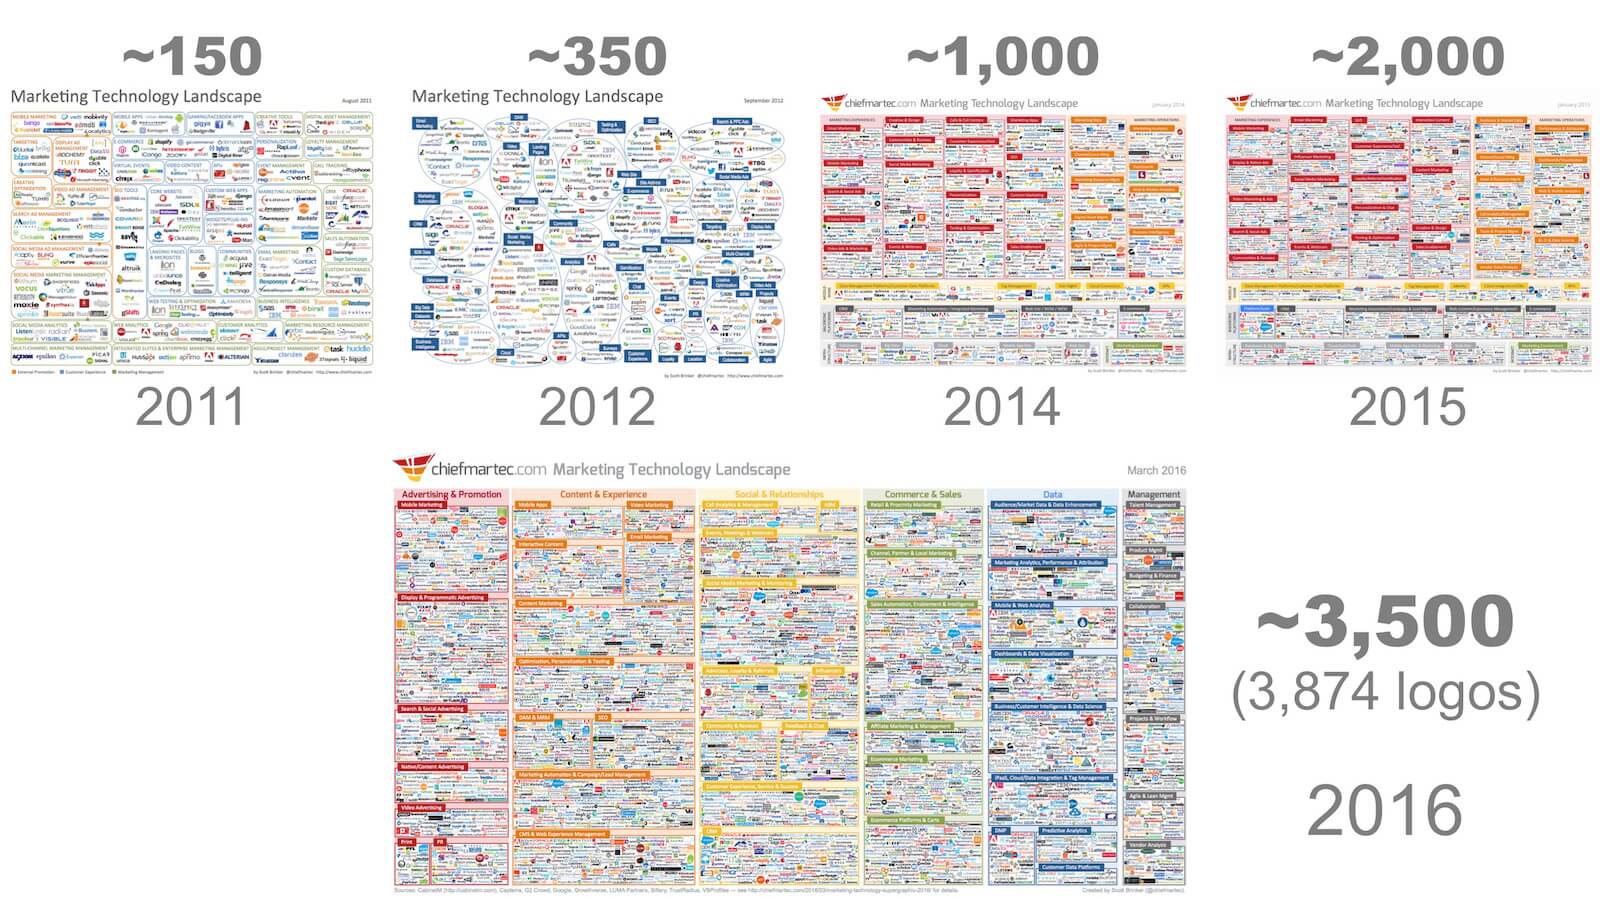 Marketing Technology Landscape Timeline 2011-2016